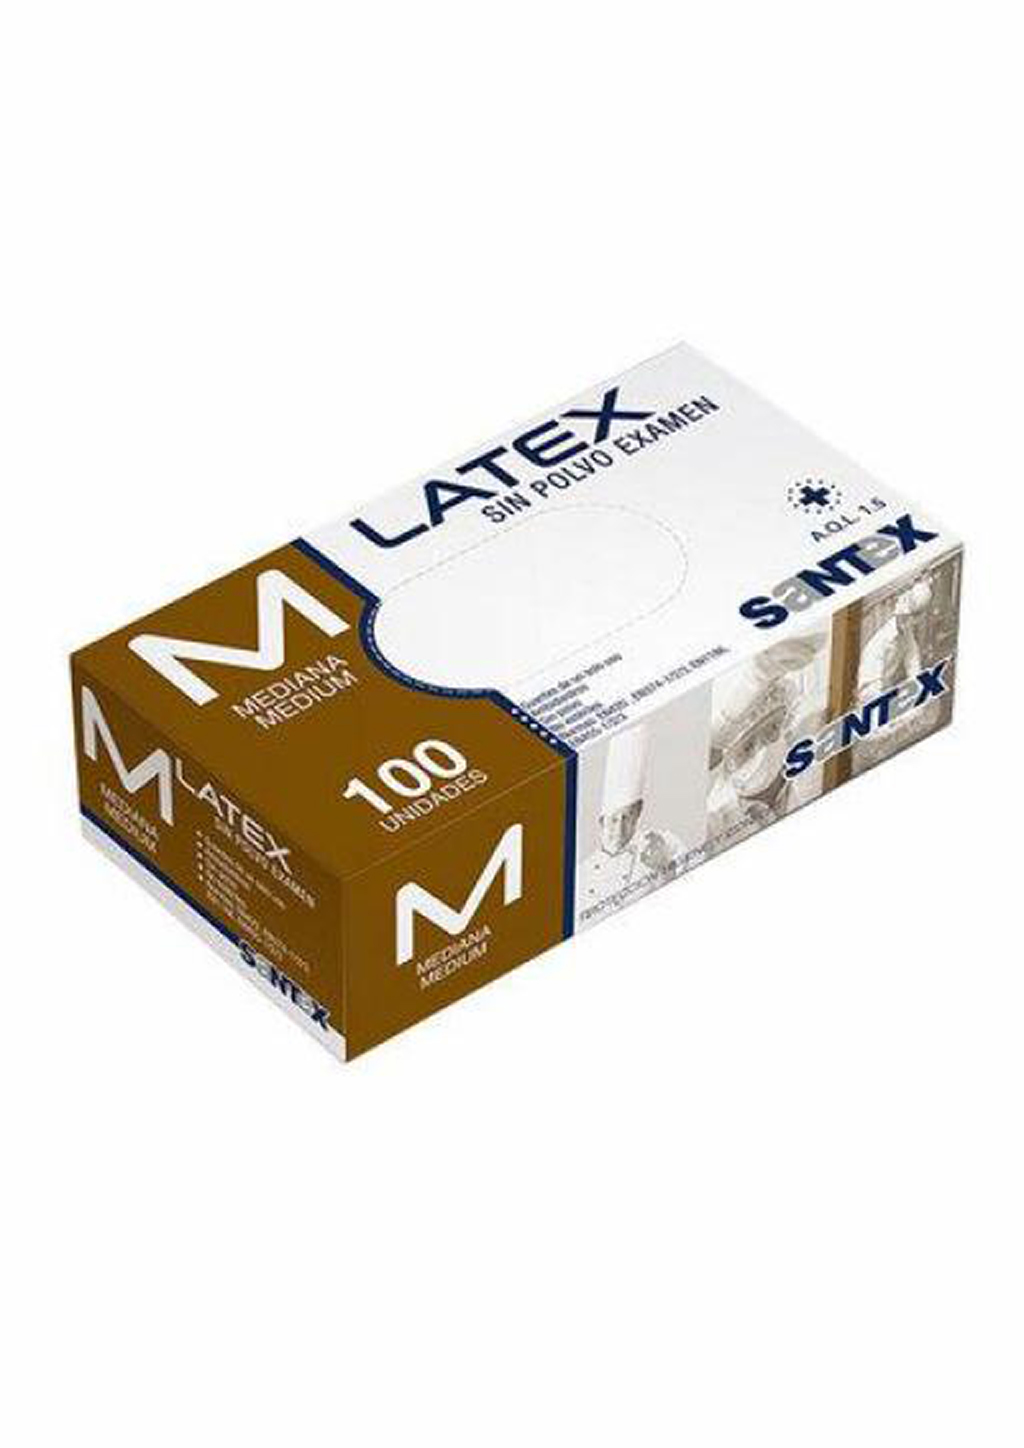 Guantes de látex blanco con polvo SANTEX (caja 100 unidades)